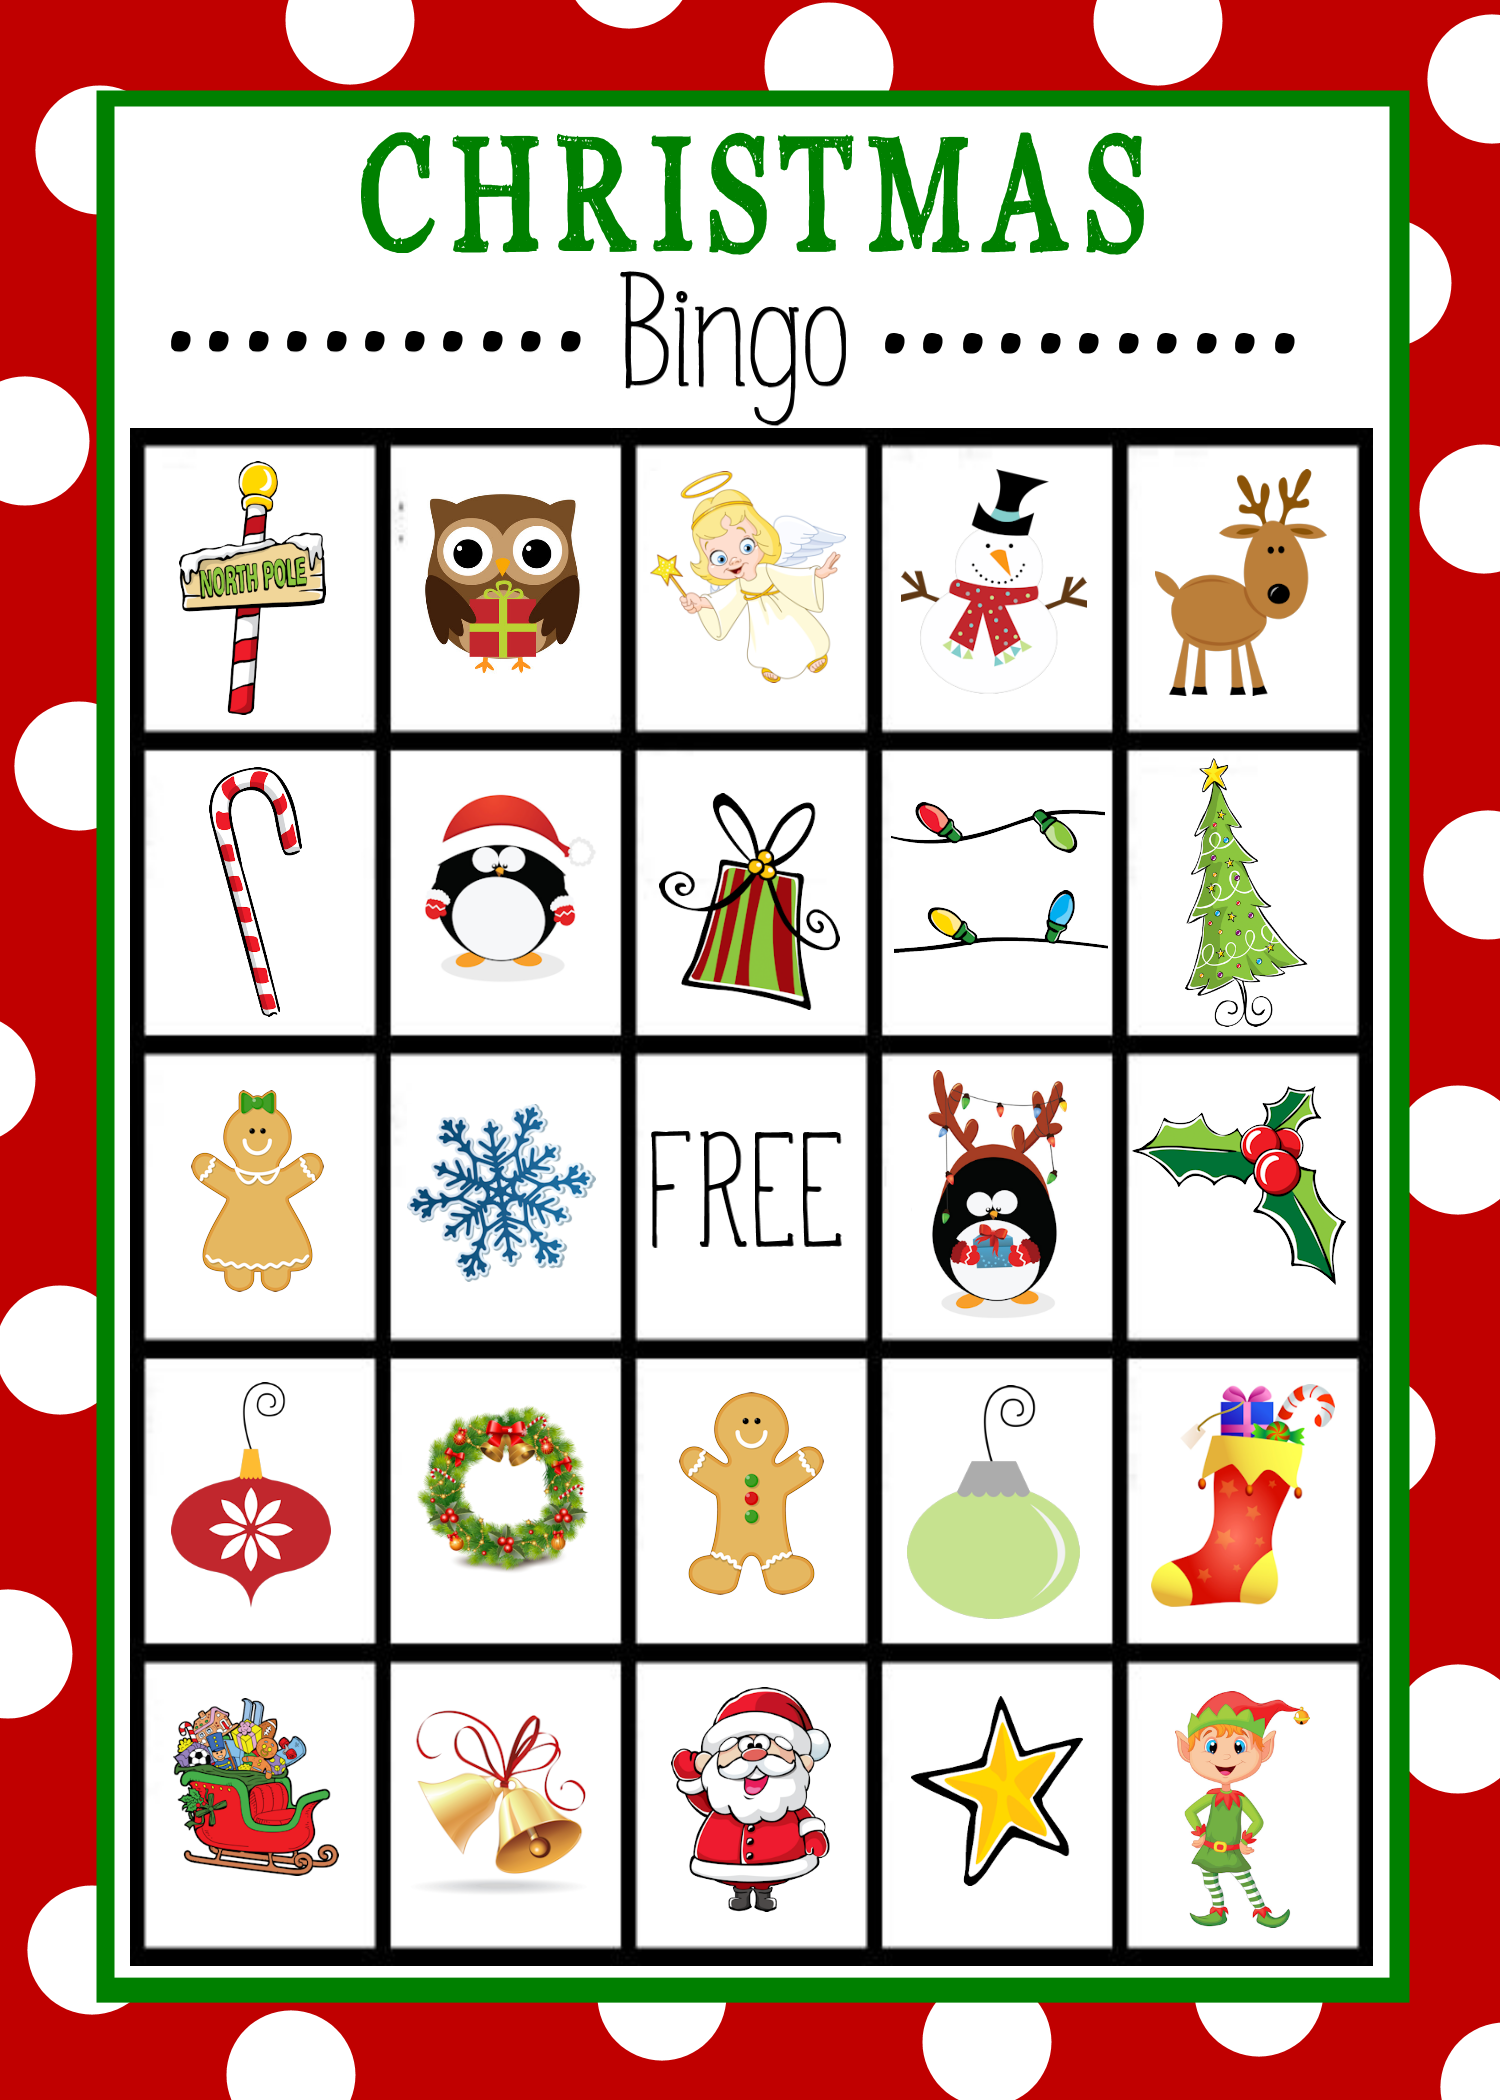 Christmas Bingo Crazy Little Projects - Free Christmas Bingo Game Printable